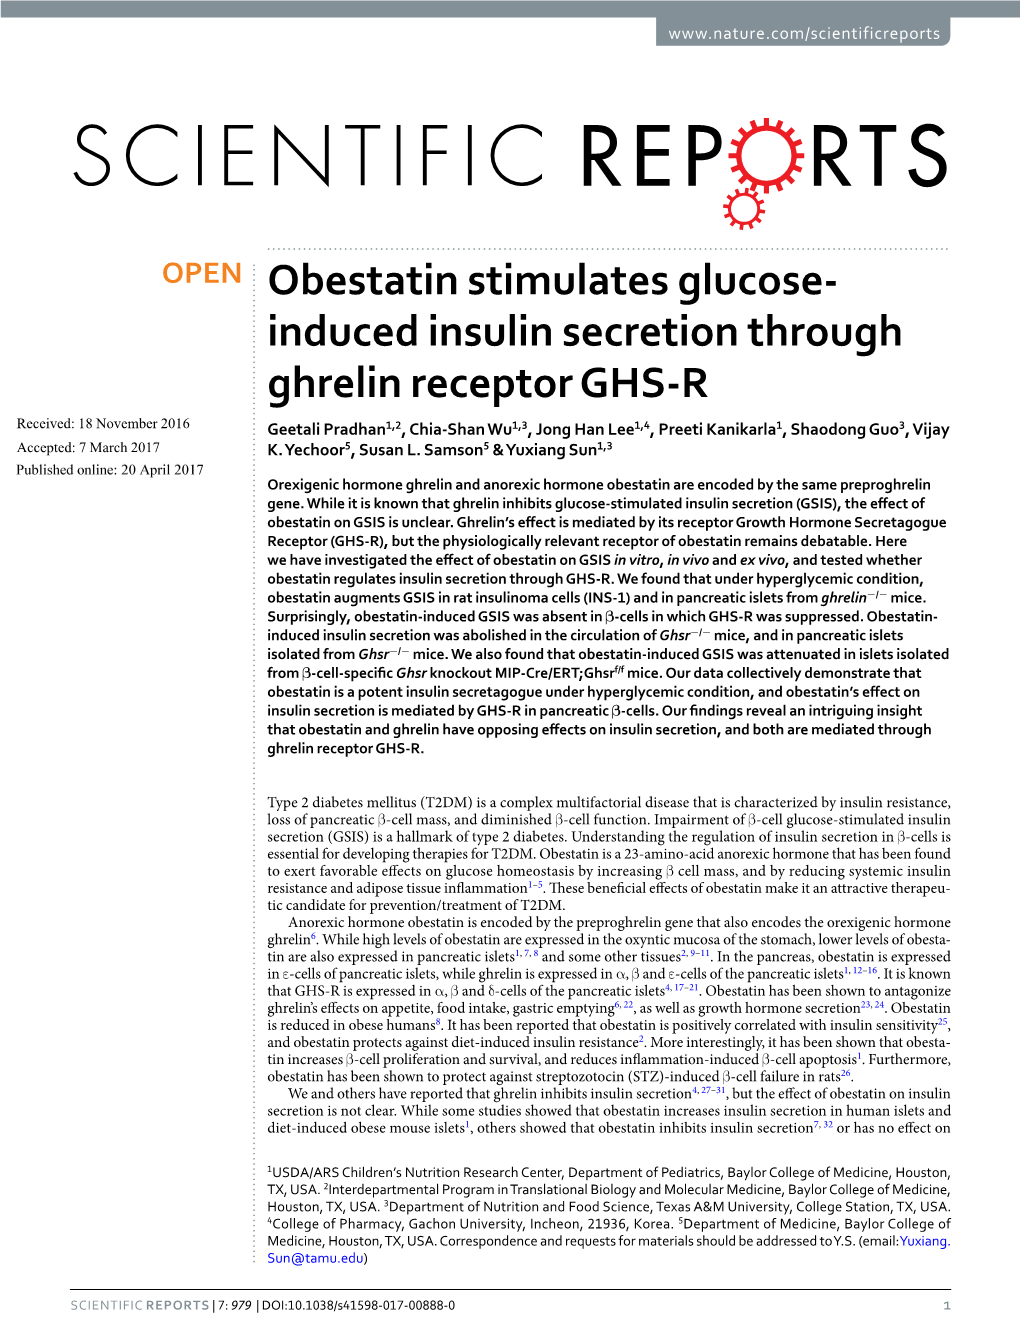 Induced Insulin Secretion Through Ghrelin Receptor GHS-R